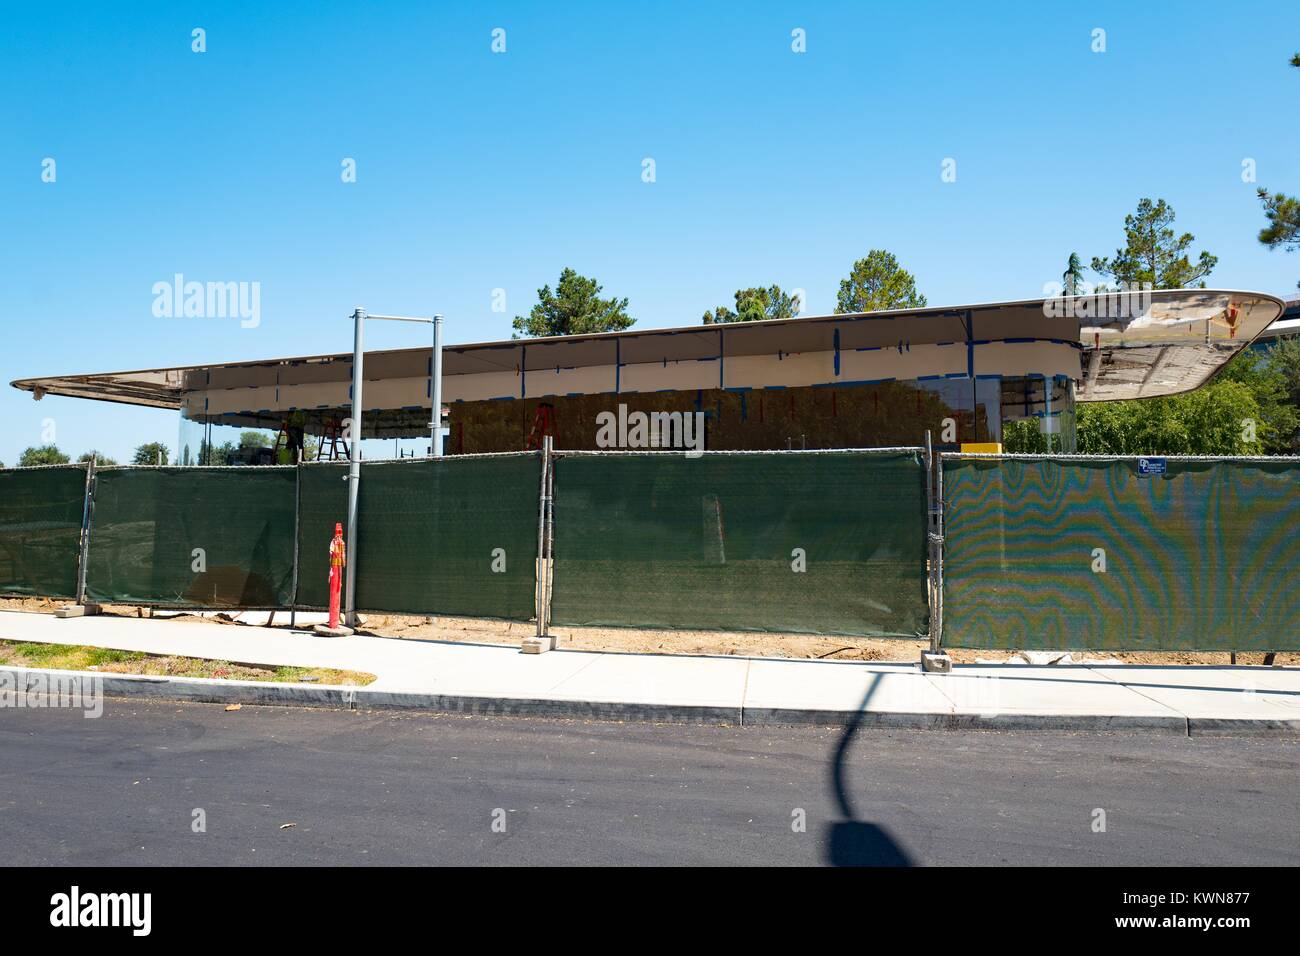 Eine teilweise konstruierten Gebäude sichtbar ist hinter einem Bauzaun auf Pruneride Allee am Apple Park, umgangssprachlich als "Raumschiff", die neue Zentrale von Apple Inc. in den Silicon Valley Stadt Cupertino, Kalifornien, 25. Juli 2017 bekannt. Stockfoto